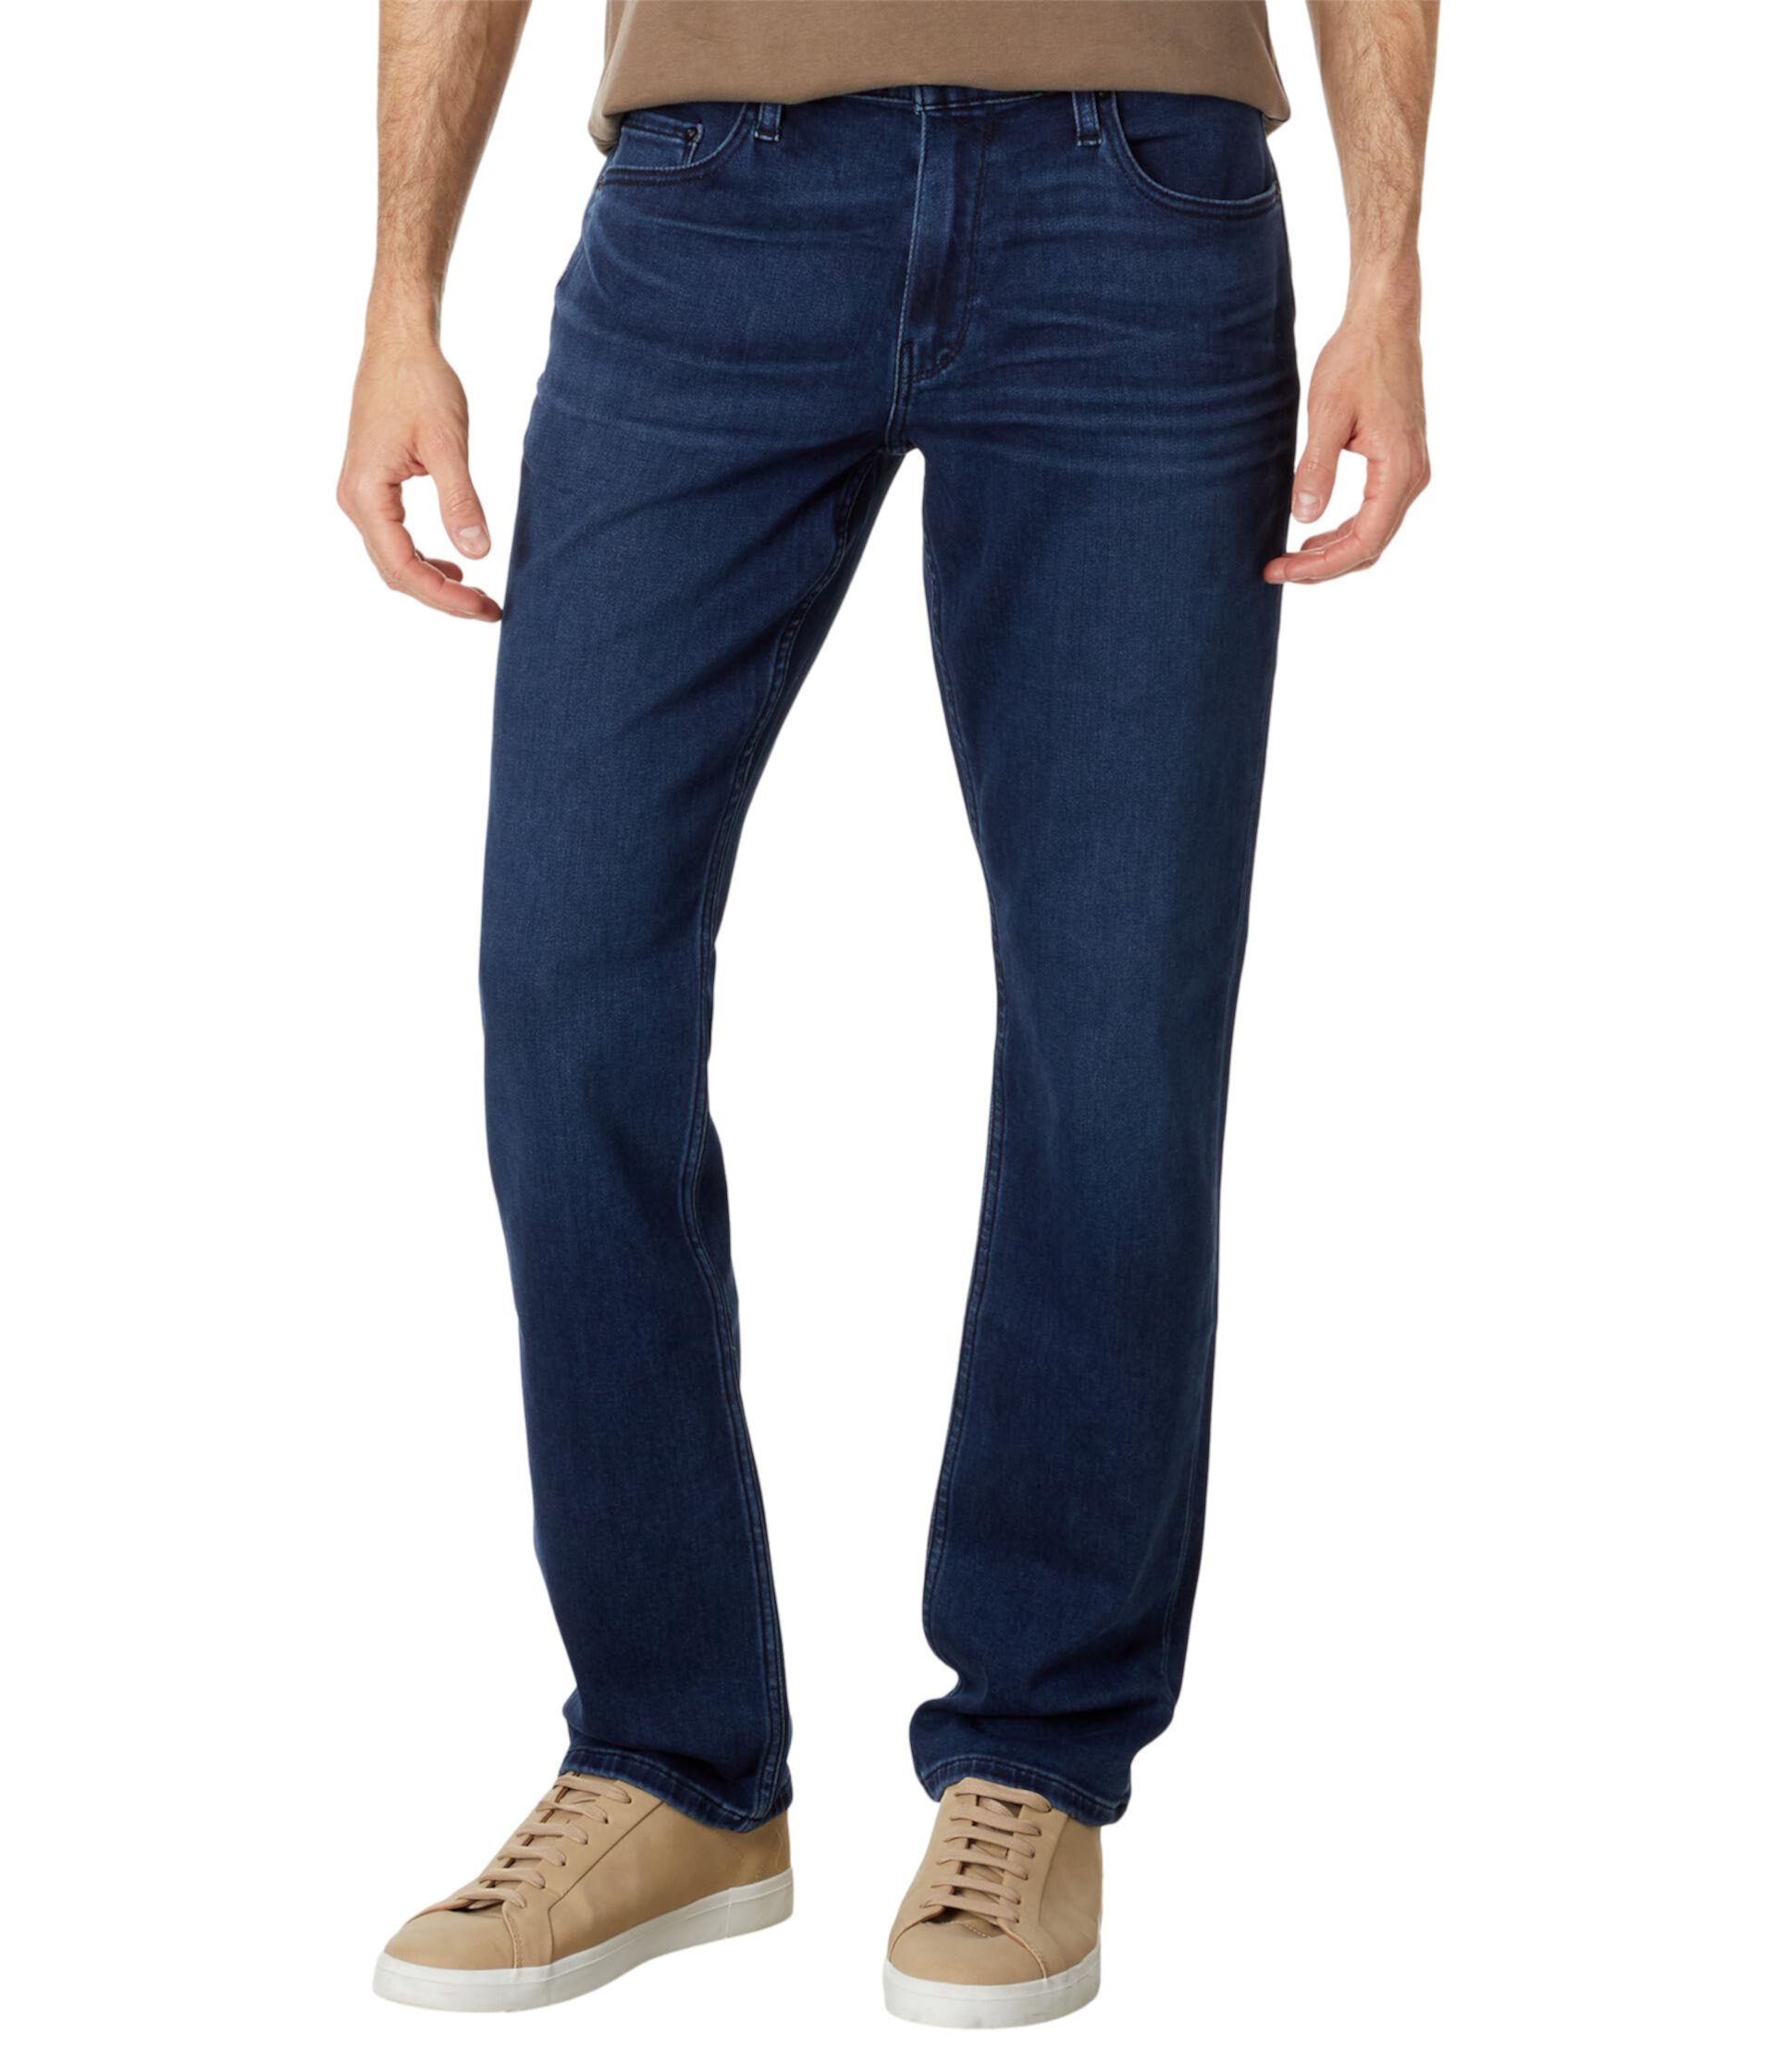 Узкие джинсы прямого кроя Federal Transcend Vintage цвета Damon Paige